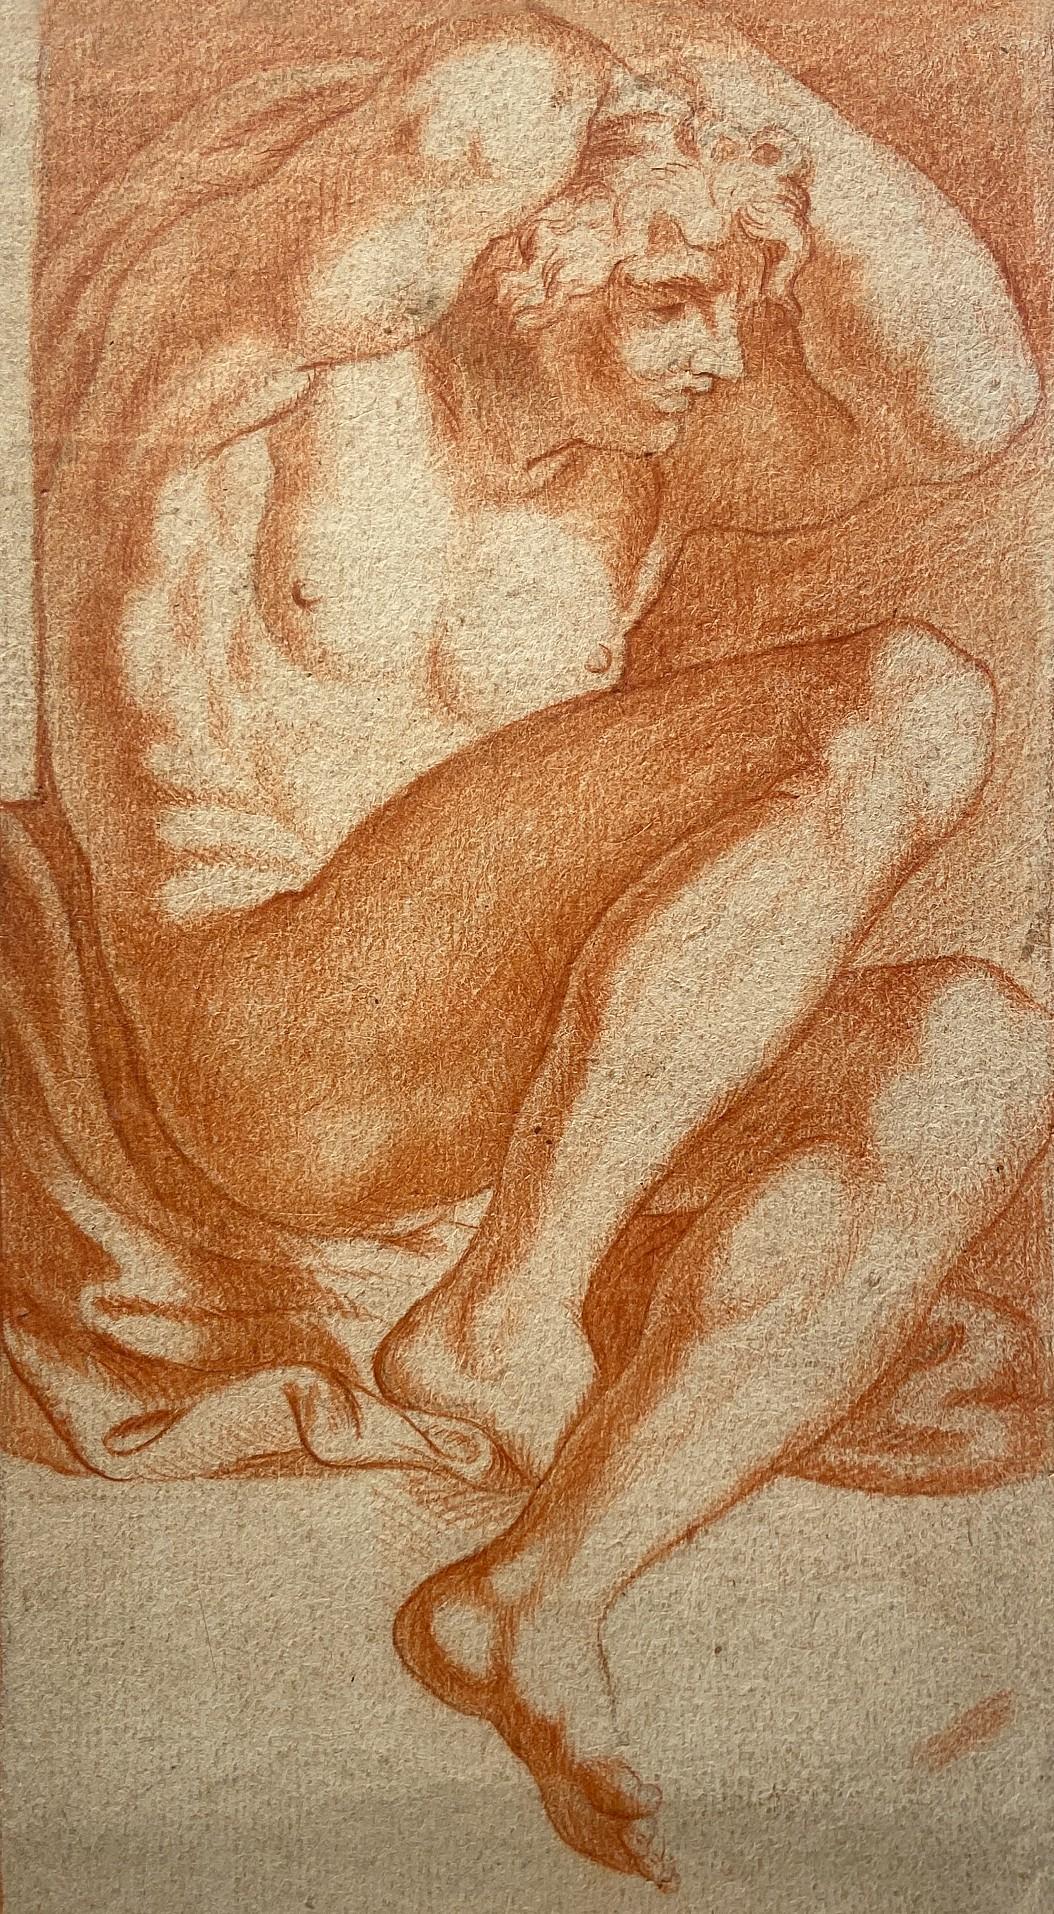 Nude Annibale Carracci - The Captive, étude d'une jeune fille nue, étude en craie rouge, Carracci Gallery